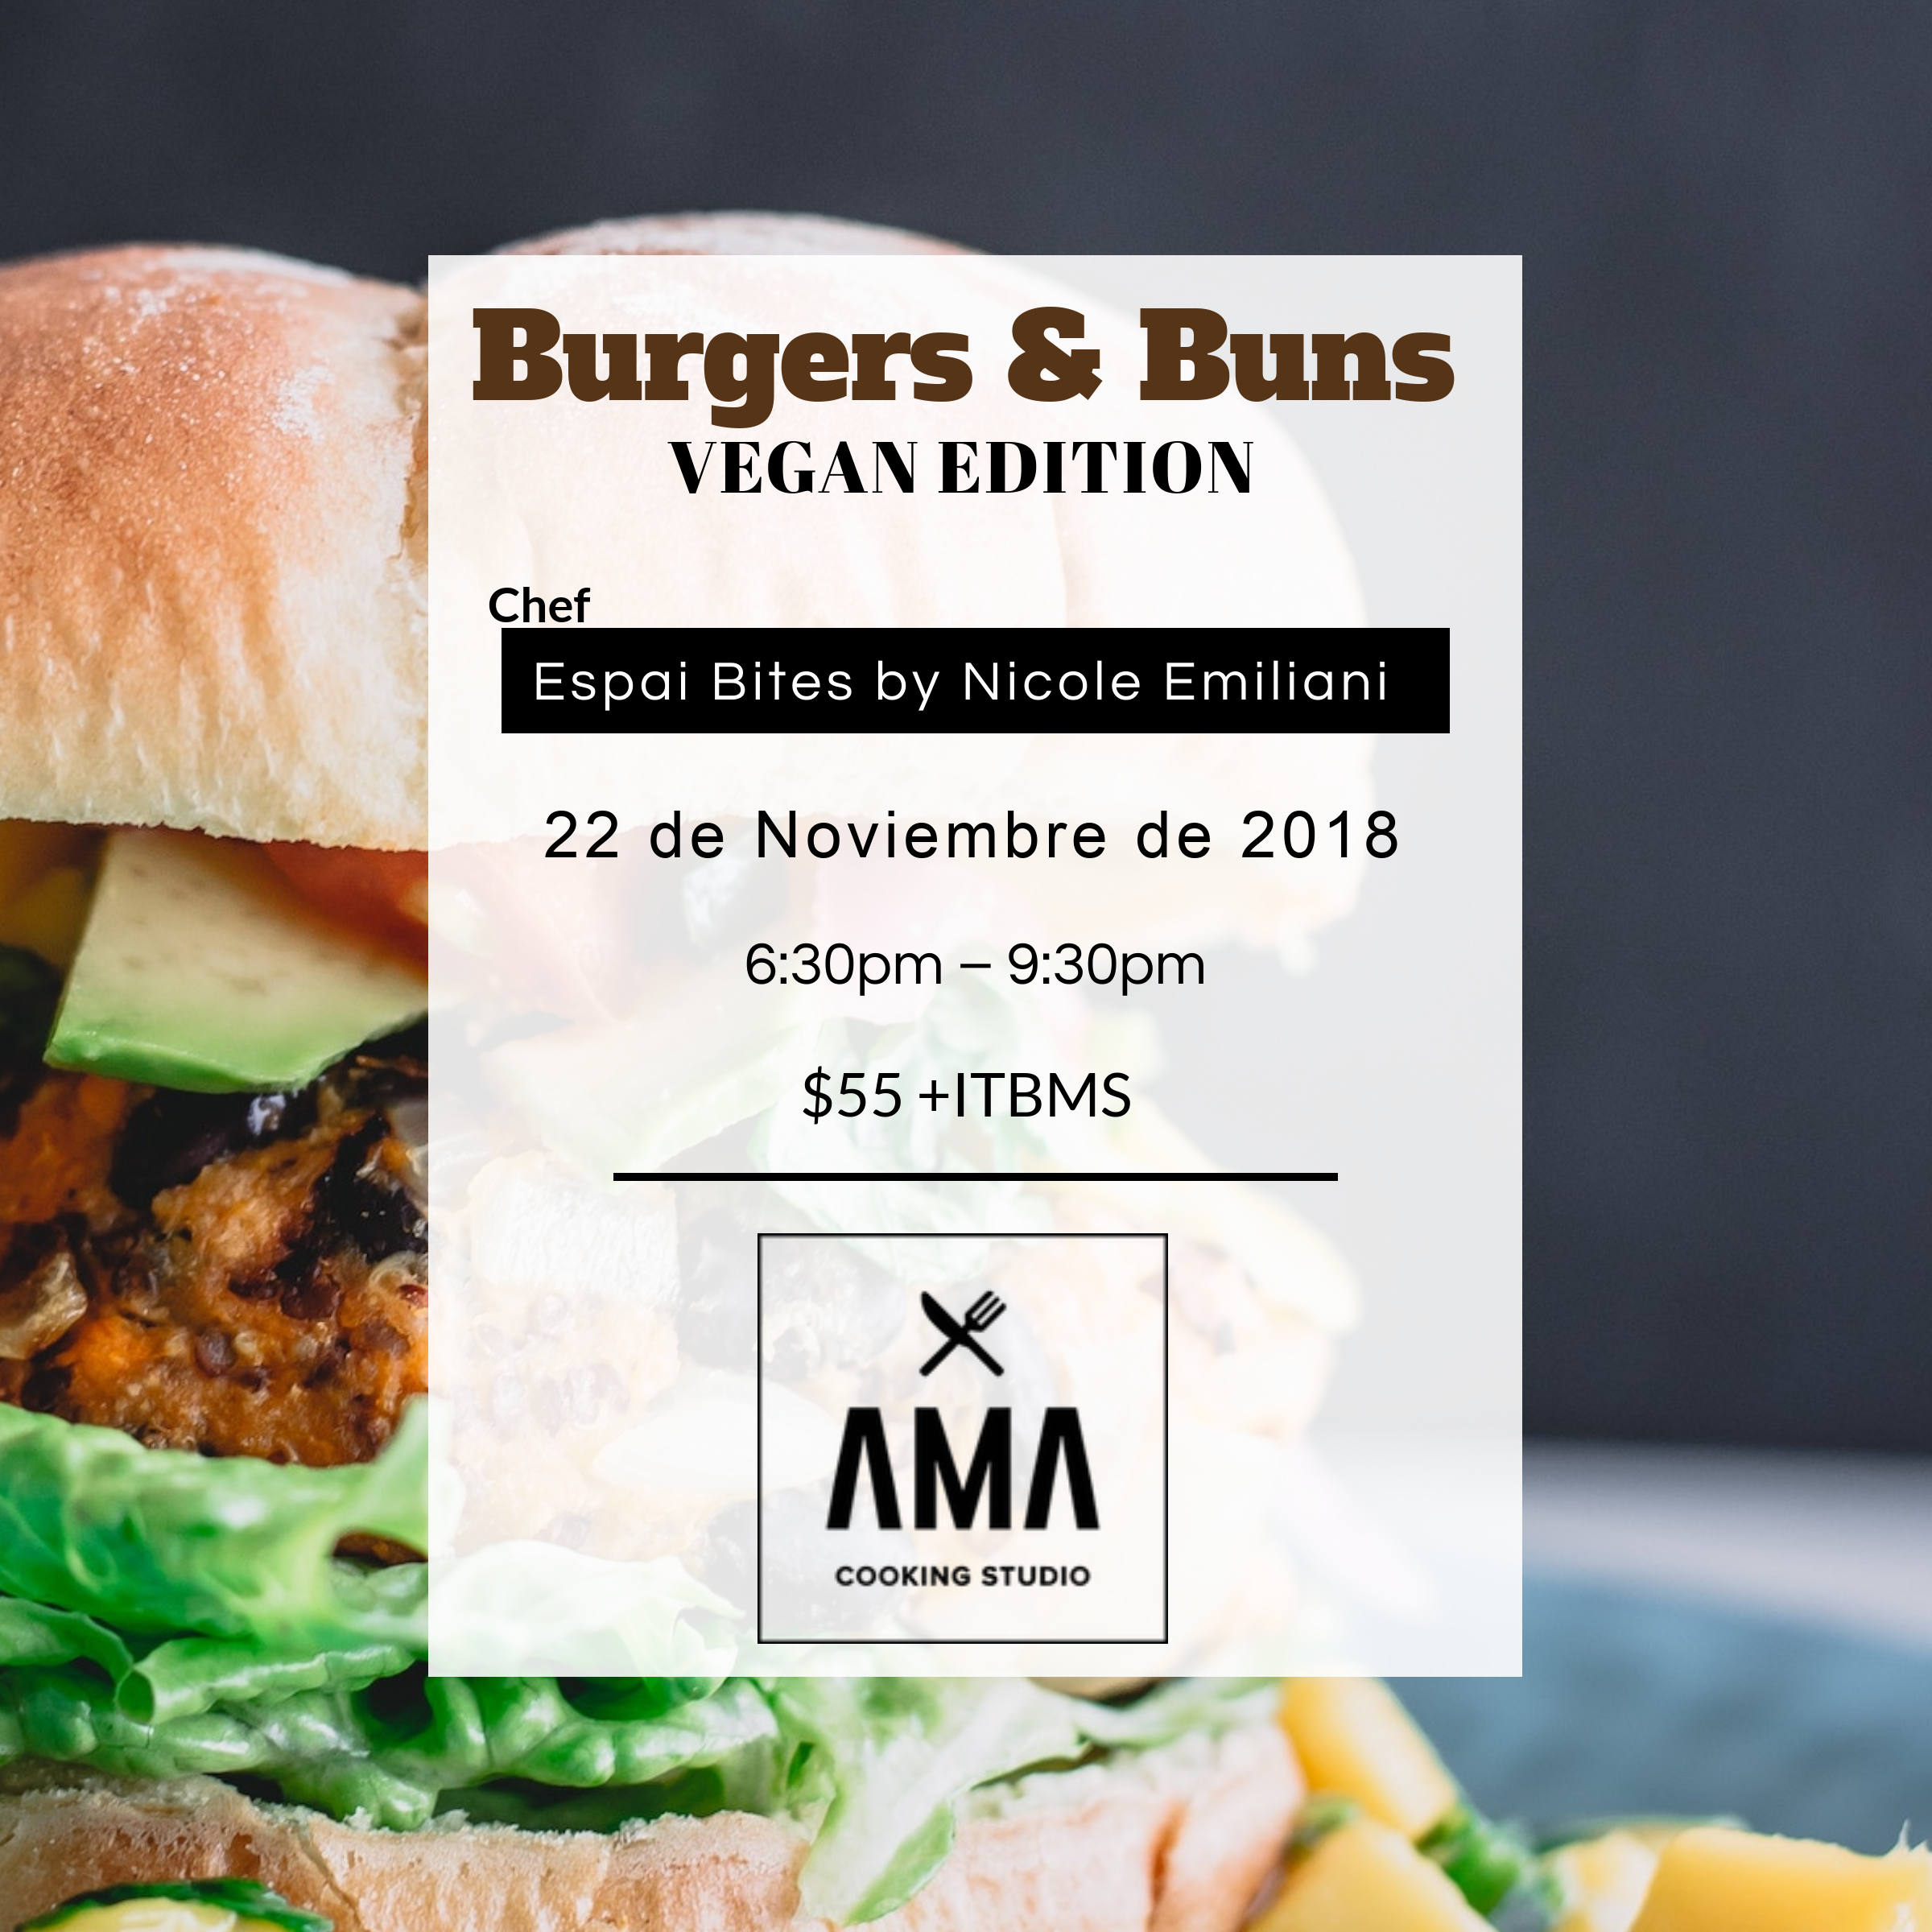 Burgers & Buns – Vegan Edition